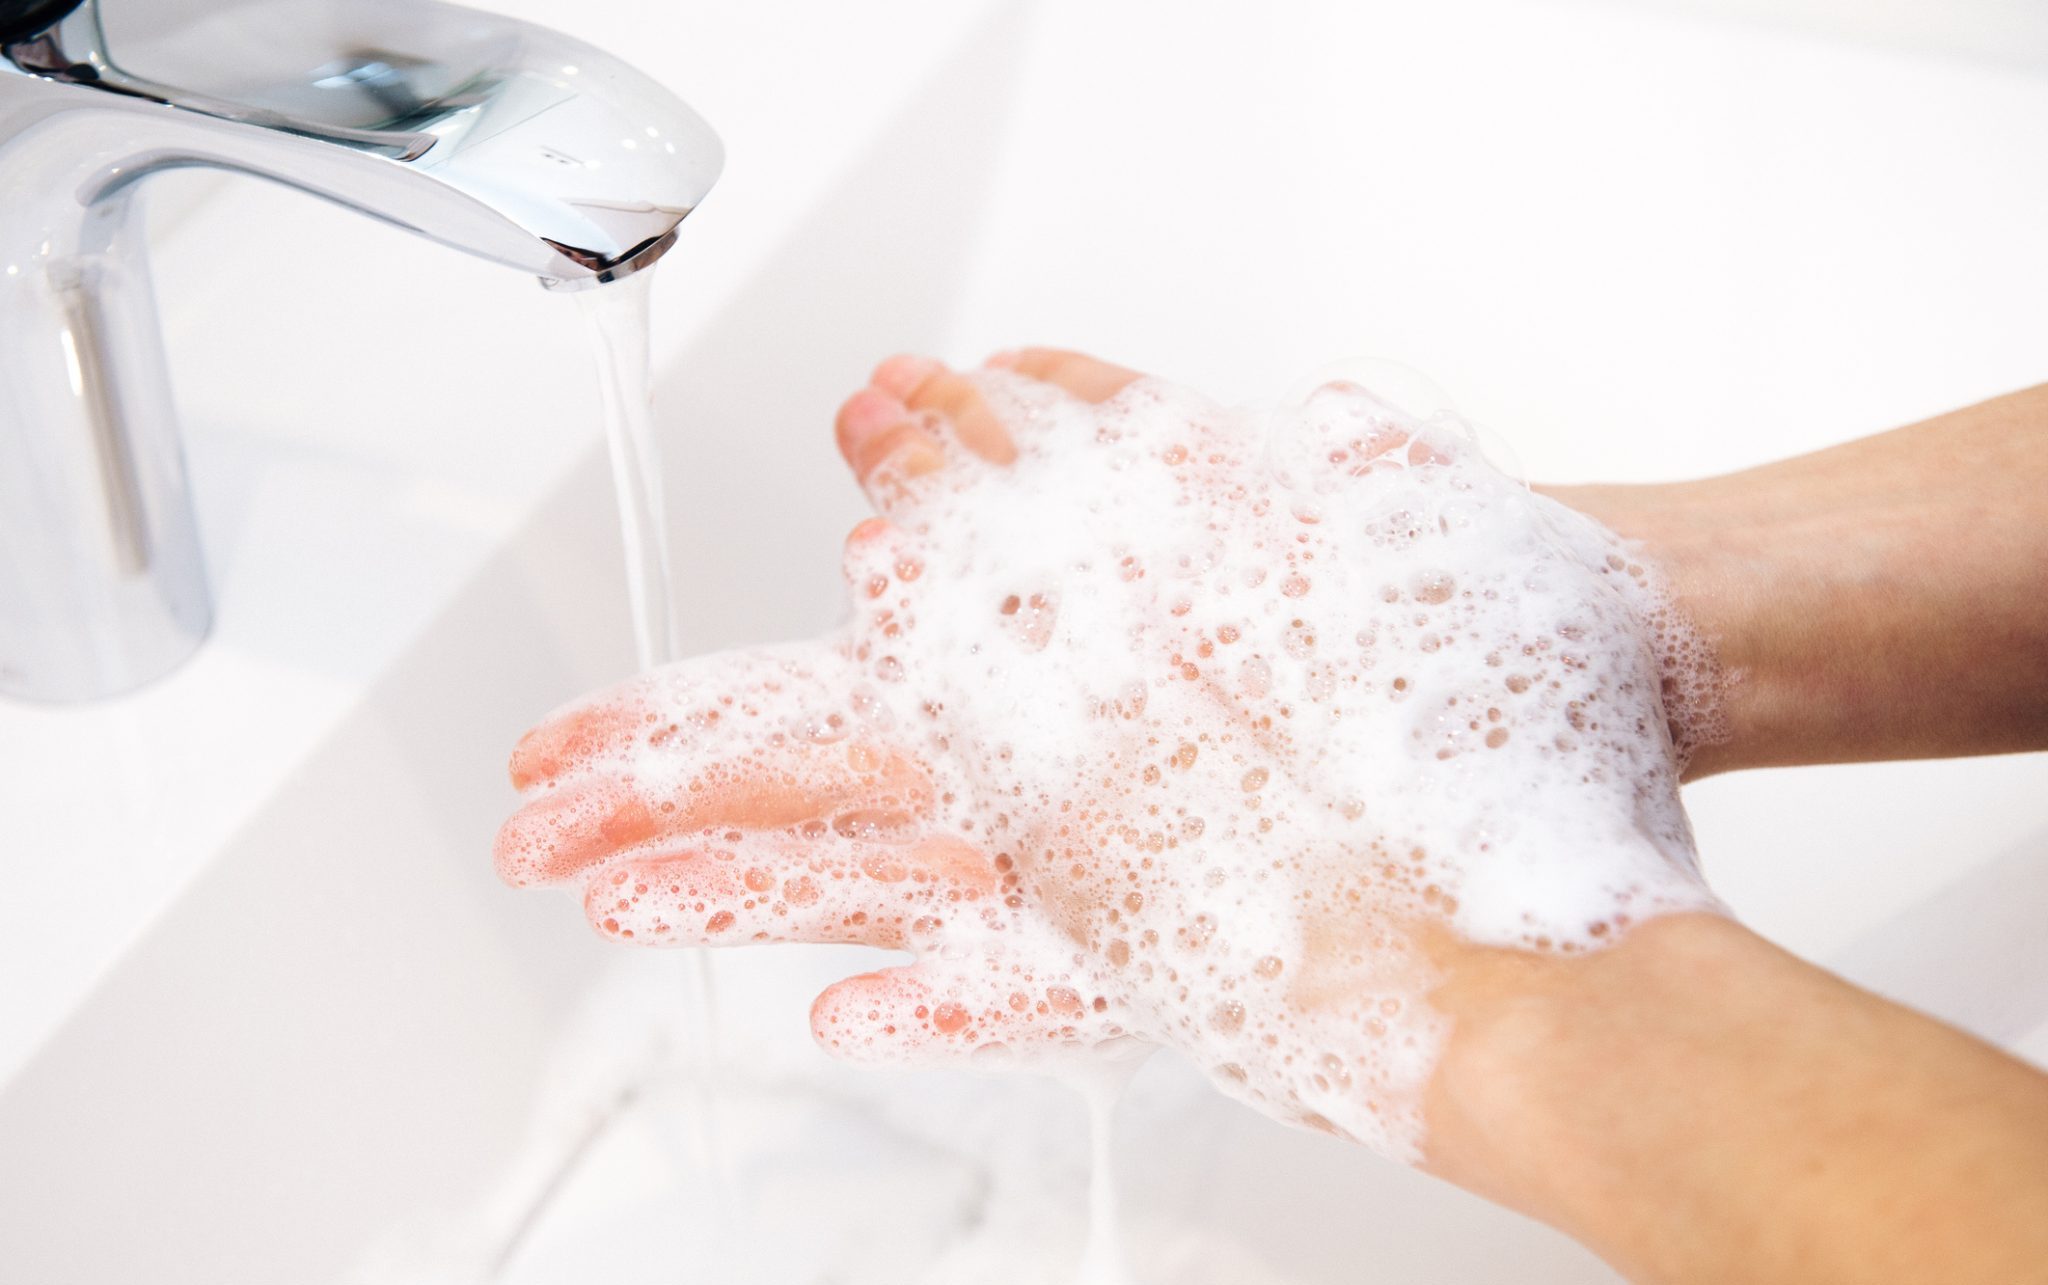 wash ur hands